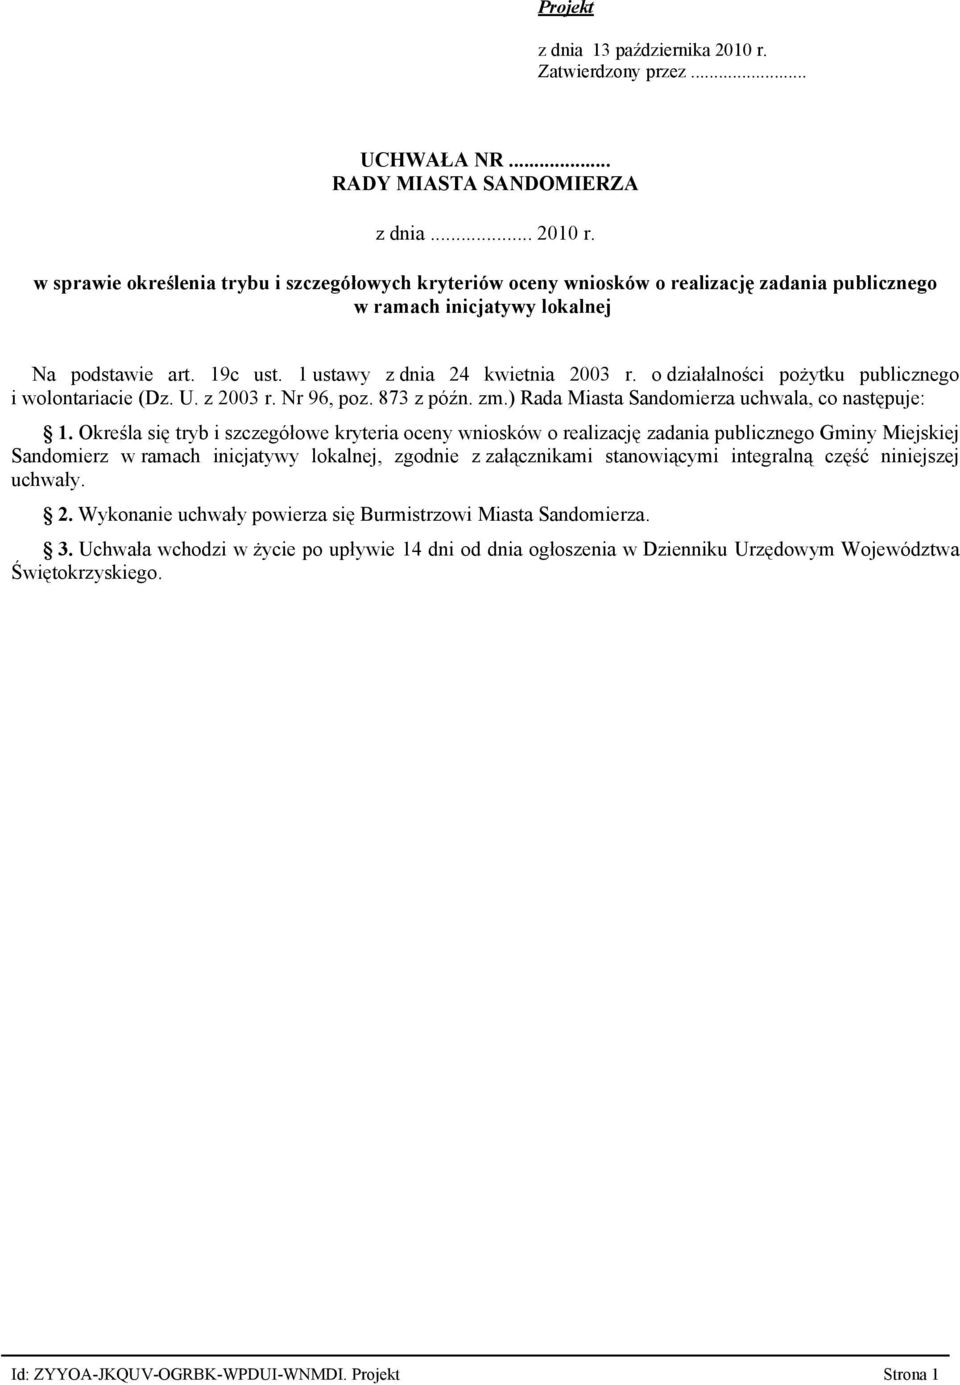 1 ustawy z dnia 24 kwietnia 2003 r. o działalności pożytku publicznego i wolontariacie (Dz. U. z 2003 r. Nr 96, poz. 873 z późn. zm.) Rada Miasta Sandomierza uchwala, co następuje: 1.